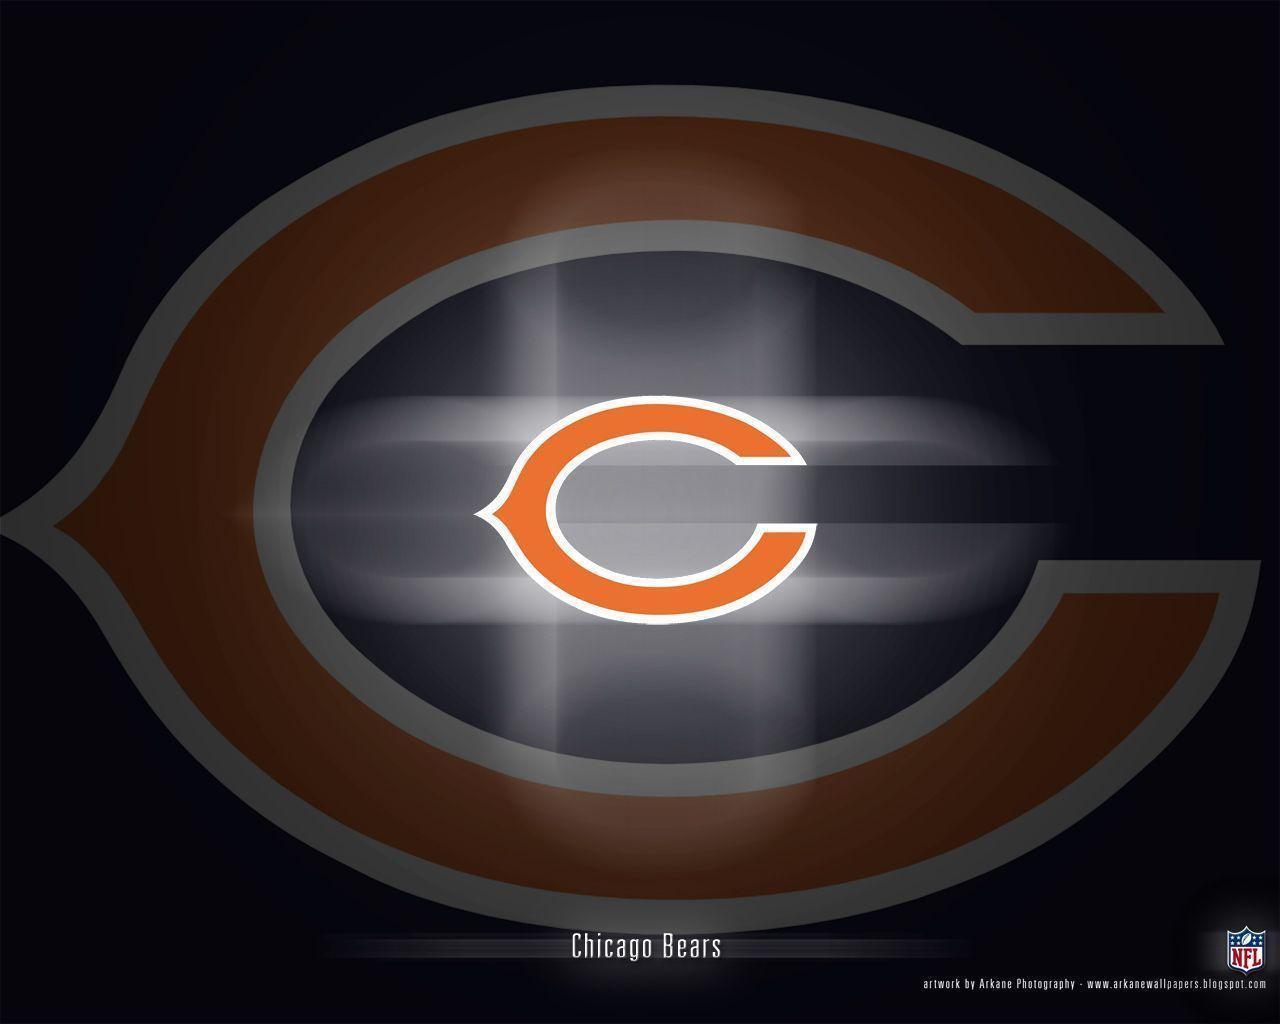 C Bears Wallpaper For Desktop taken from Chicago Bears Wallpaper